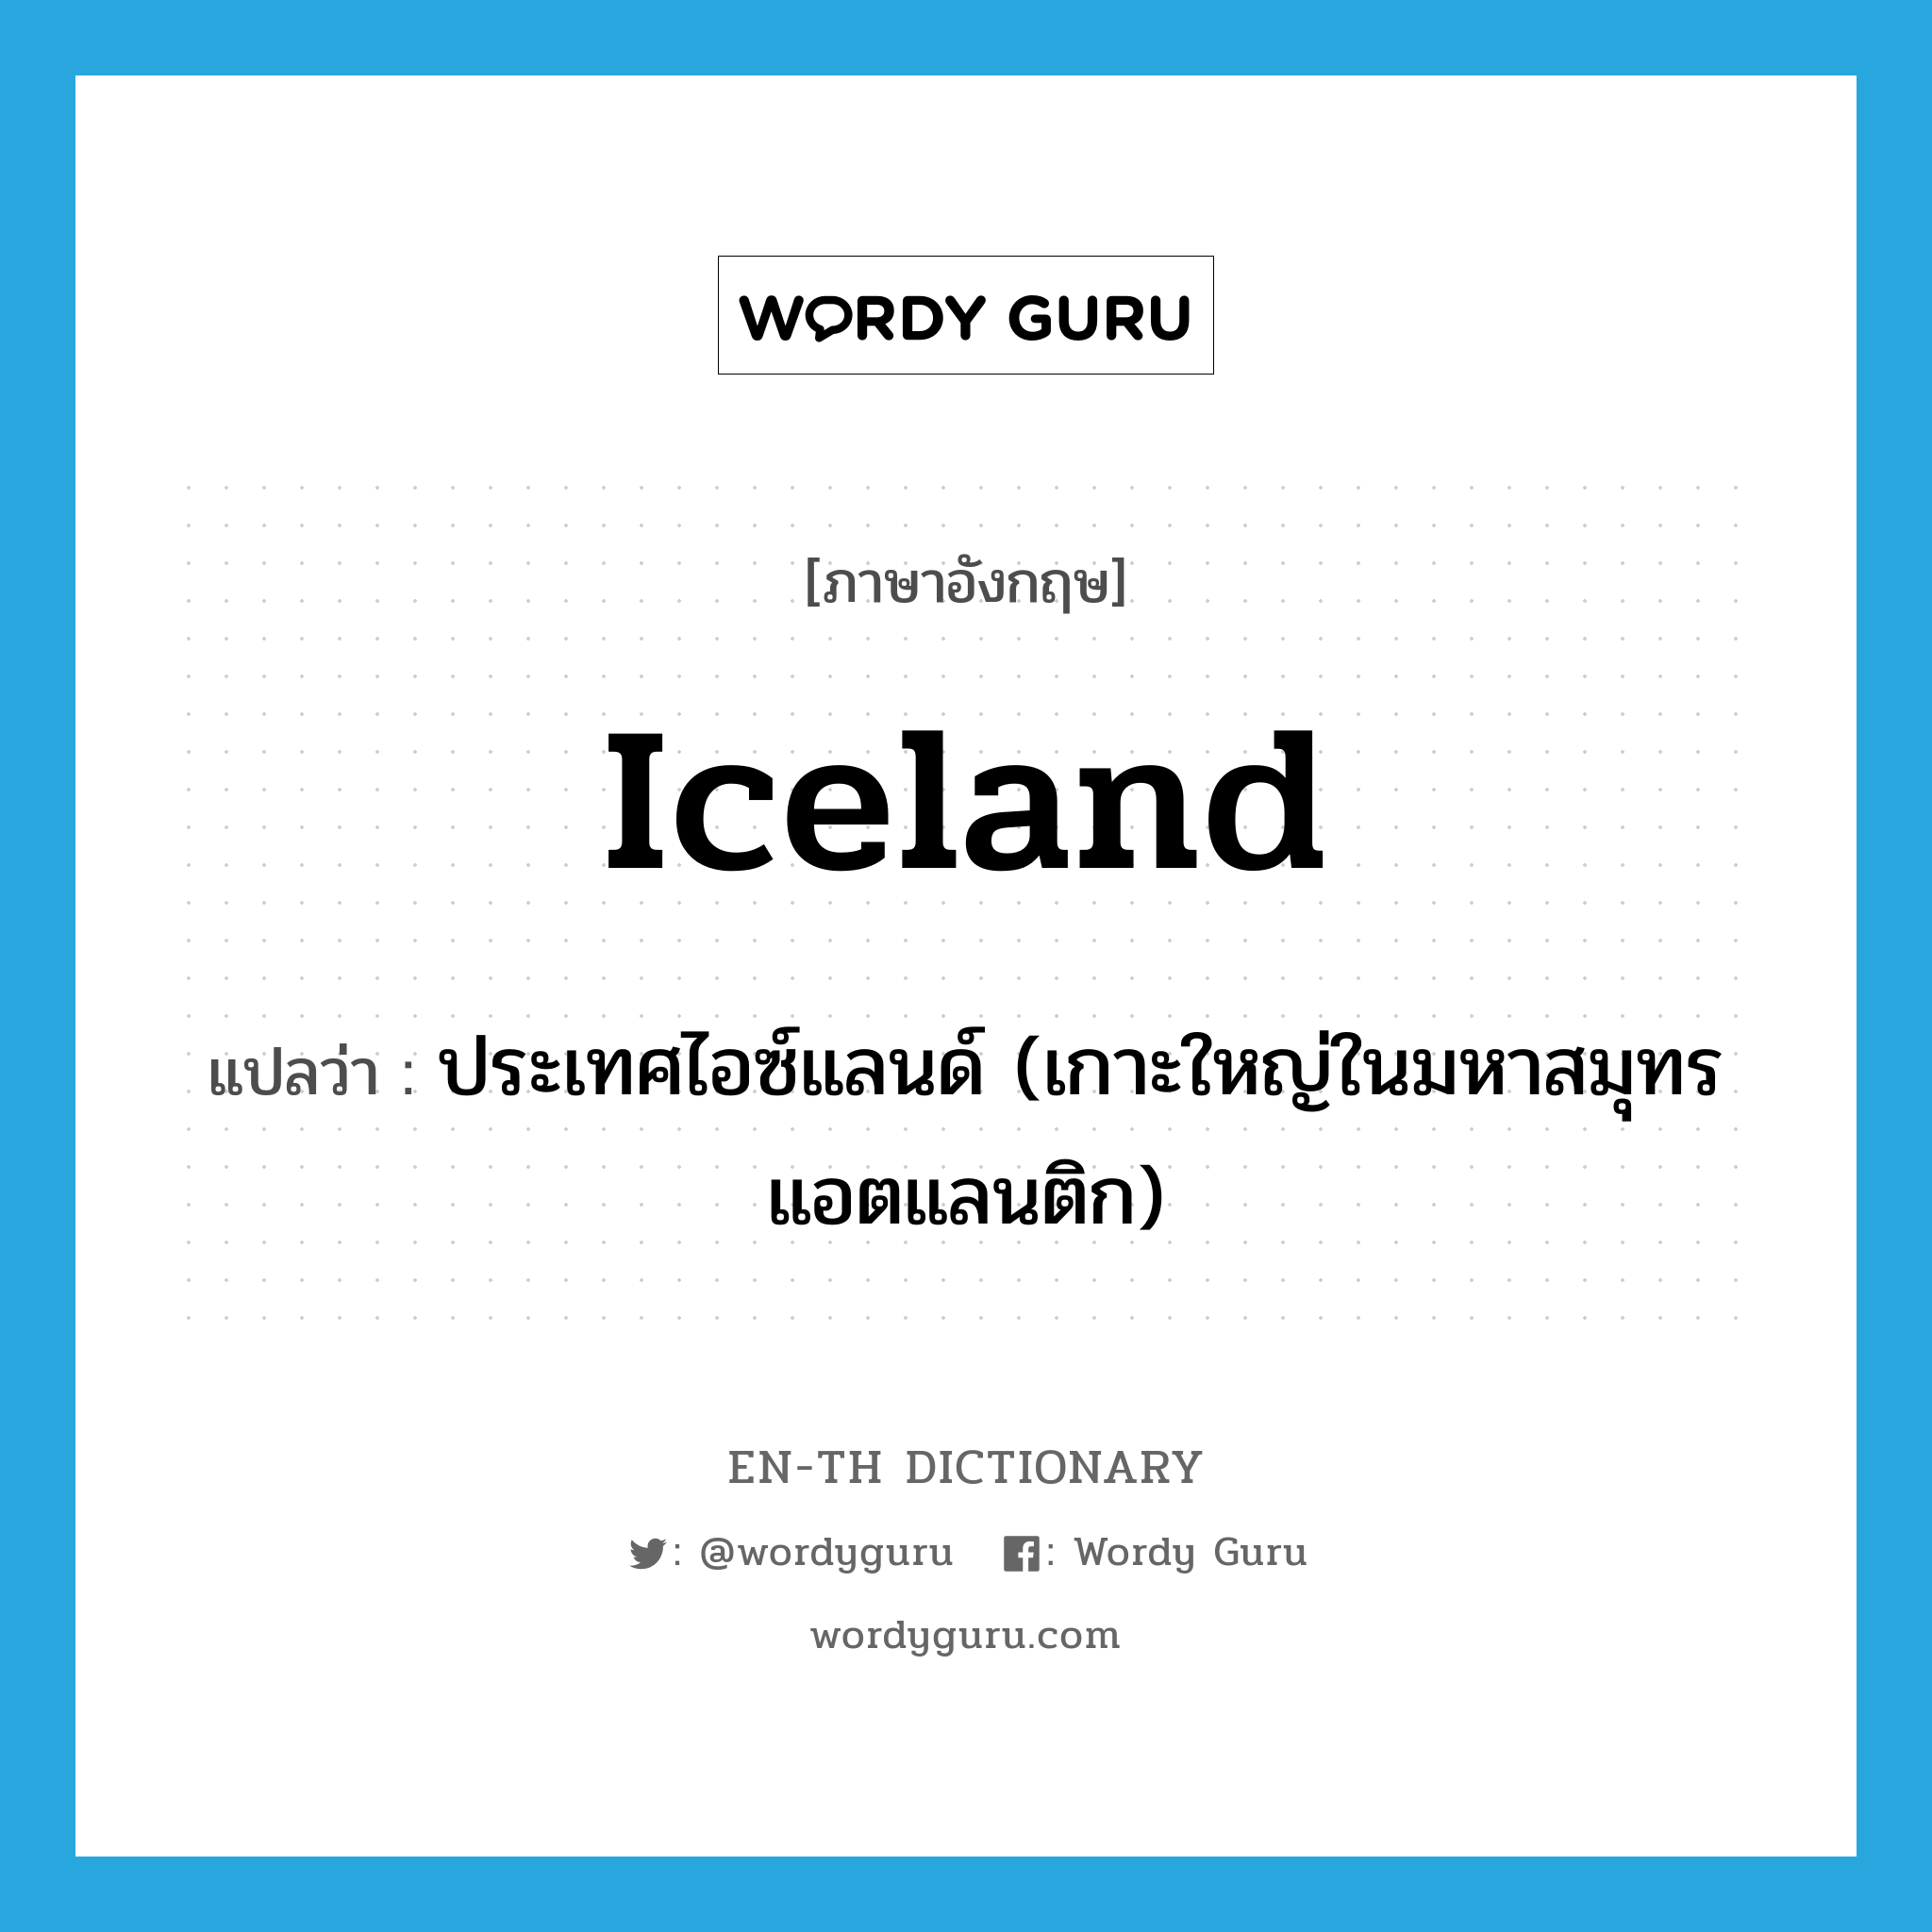 ประเทศไอซ์แลนด์ (เกาะใหญ่ในมหาสมุทรแอตแลนติก) ภาษาอังกฤษ?, คำศัพท์ภาษาอังกฤษ ประเทศไอซ์แลนด์ (เกาะใหญ่ในมหาสมุทรแอตแลนติก) แปลว่า Iceland ประเภท N หมวด N